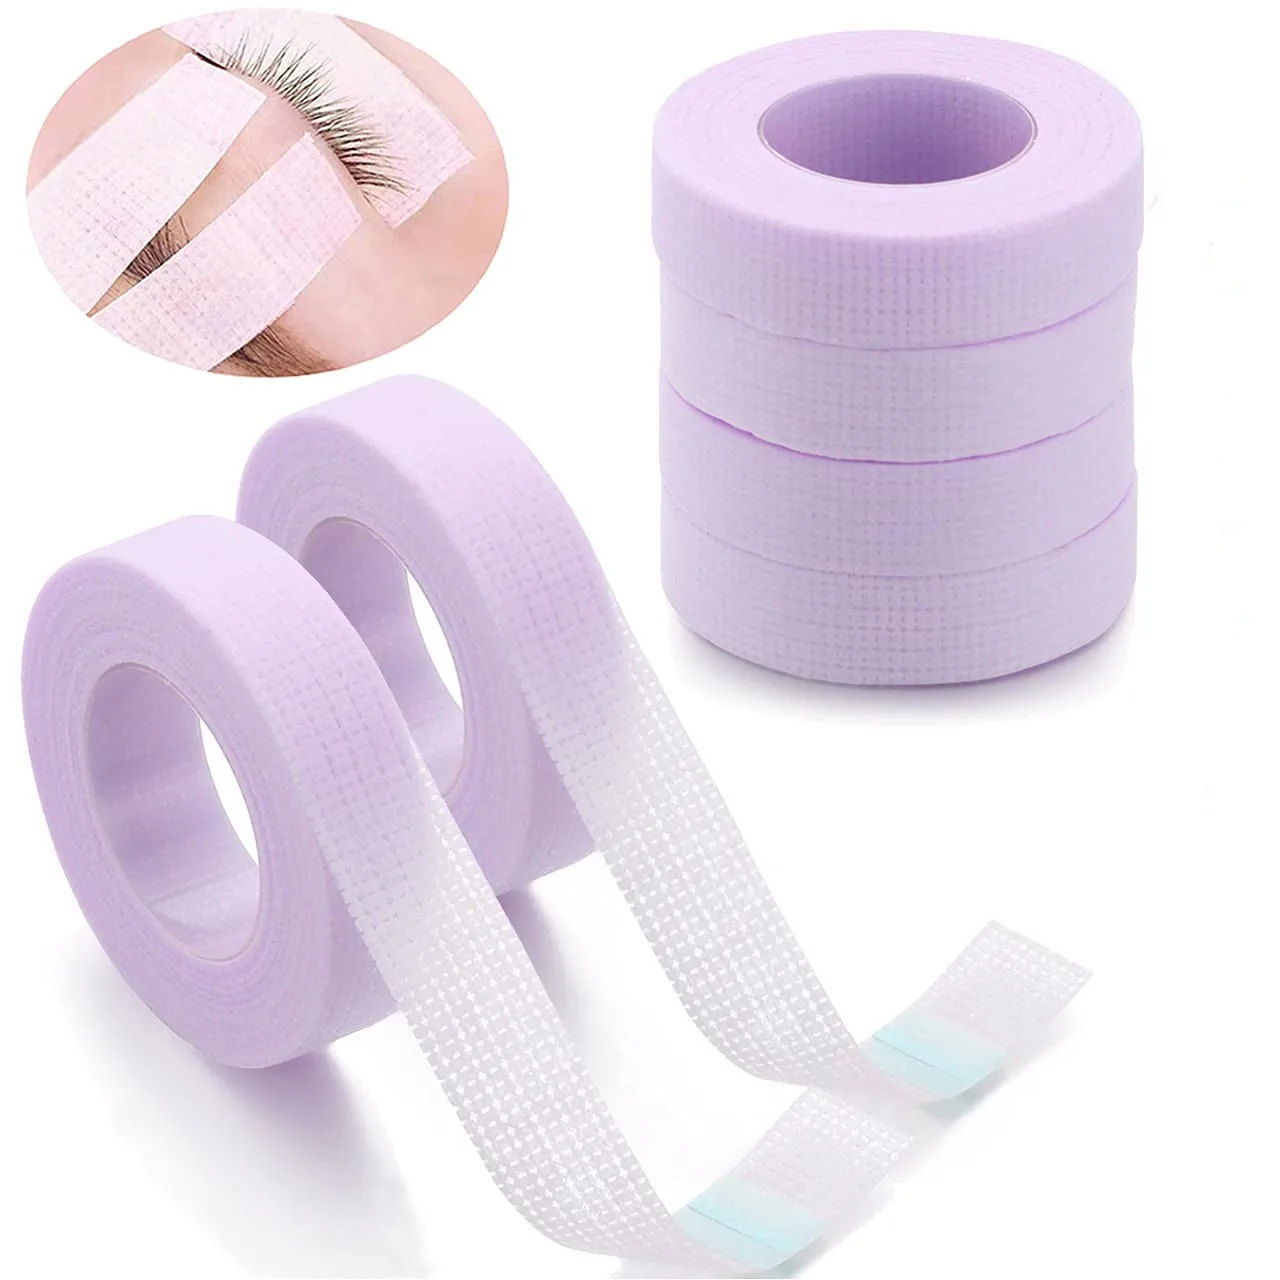 

Накладки для наращивания ресниц розовые накладные ресницы накладки для наращивания накладки под глаза принадлежности для наращивания инструменты для макияжа цветная бумага